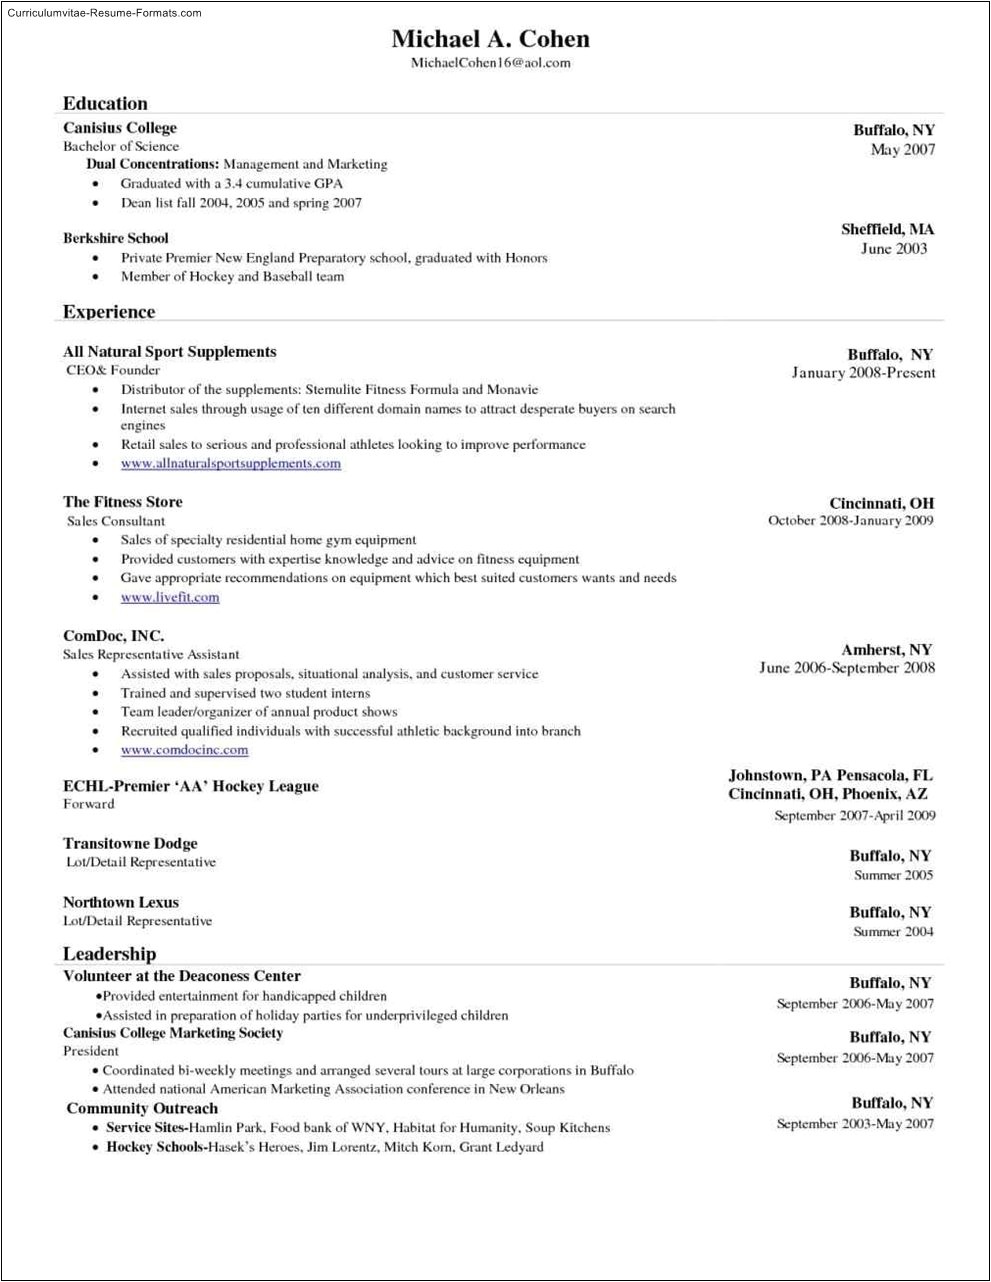 fr free resume templates word 2010 unique tem